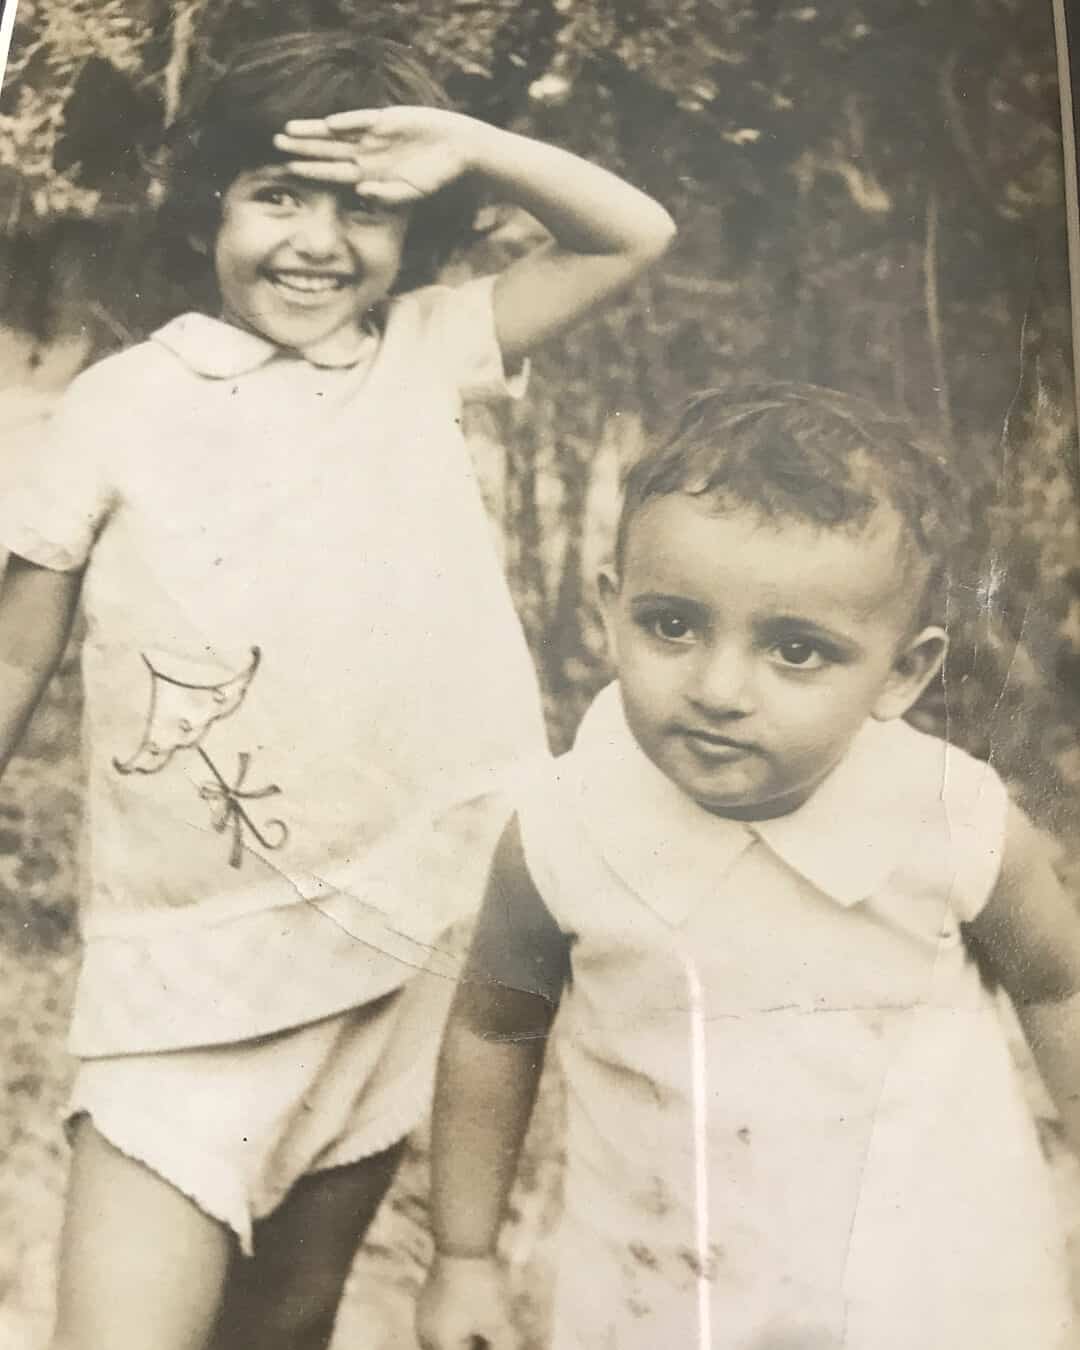 Manisha Koirala - Early Life And Upbringing